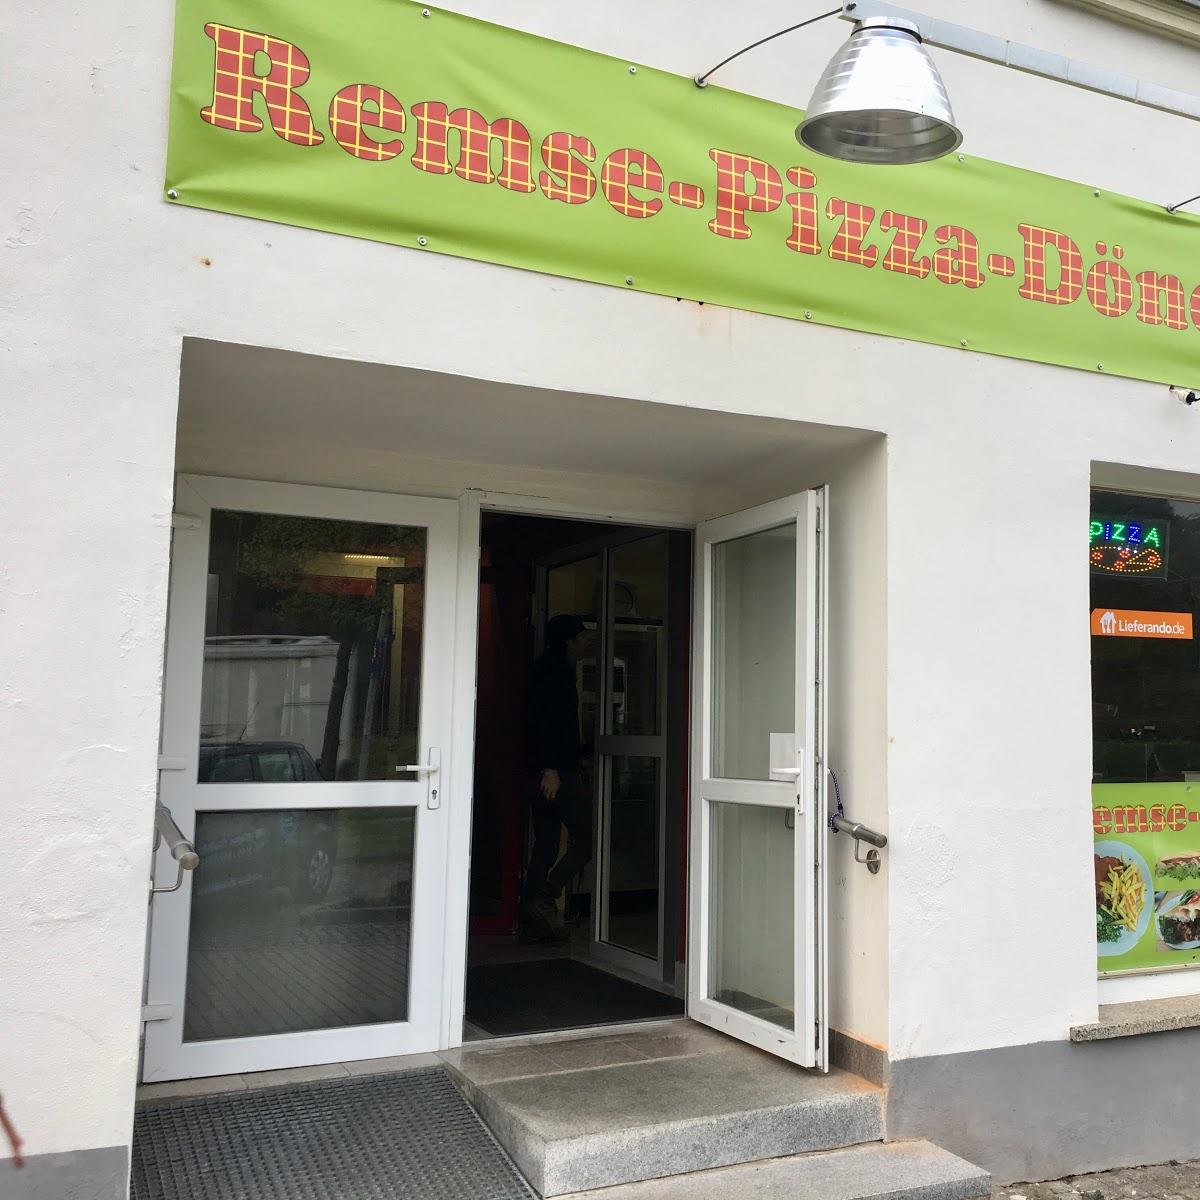 Restaurant "Pizza Döner" in Remse